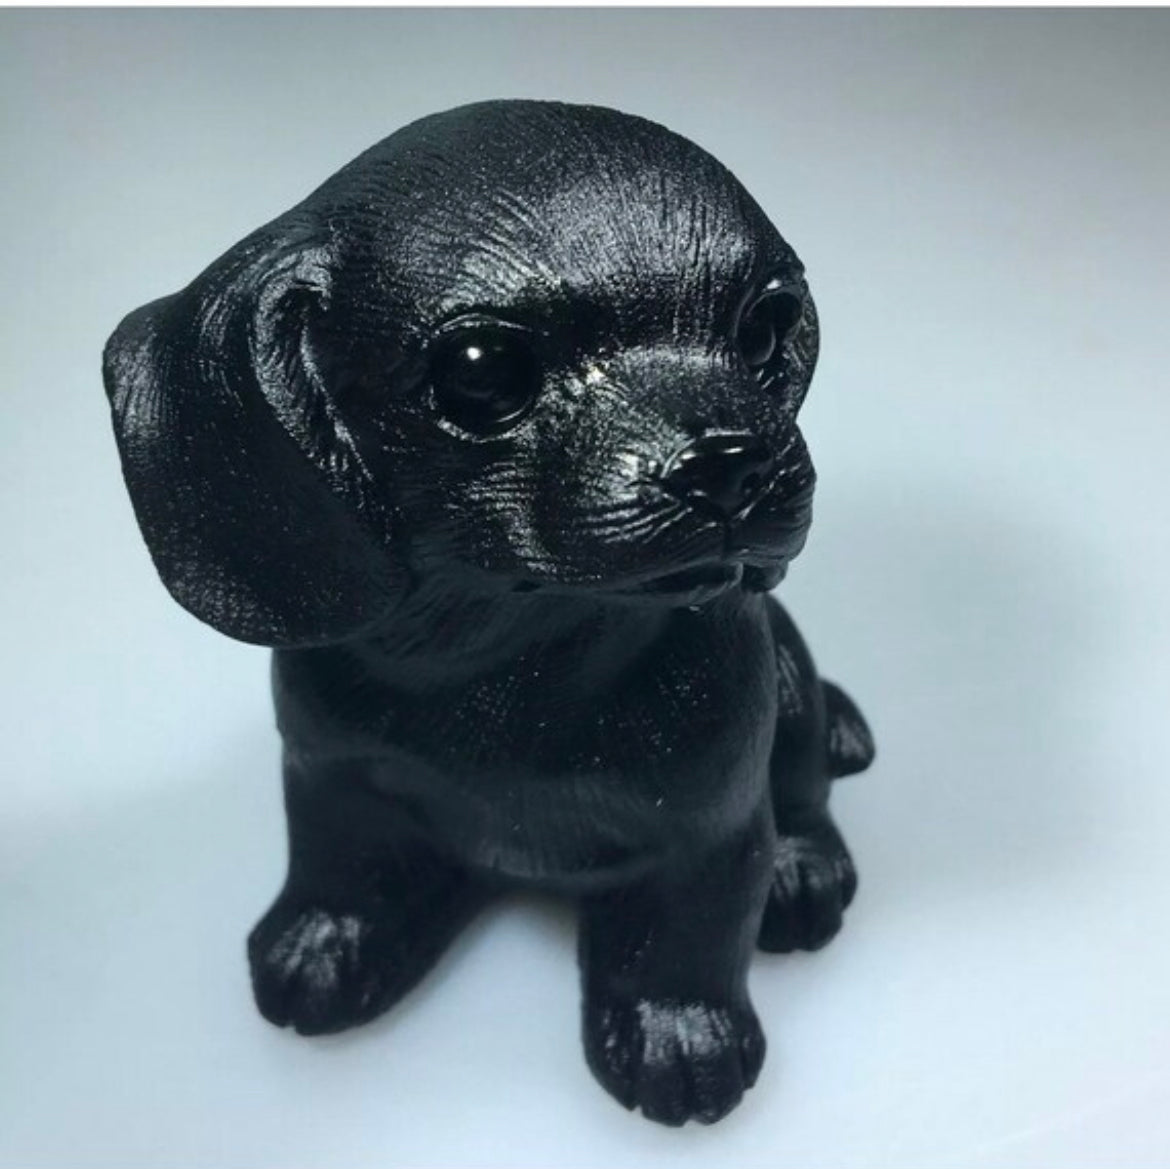 Black Obsidian Labrador Retriever crystal figurine